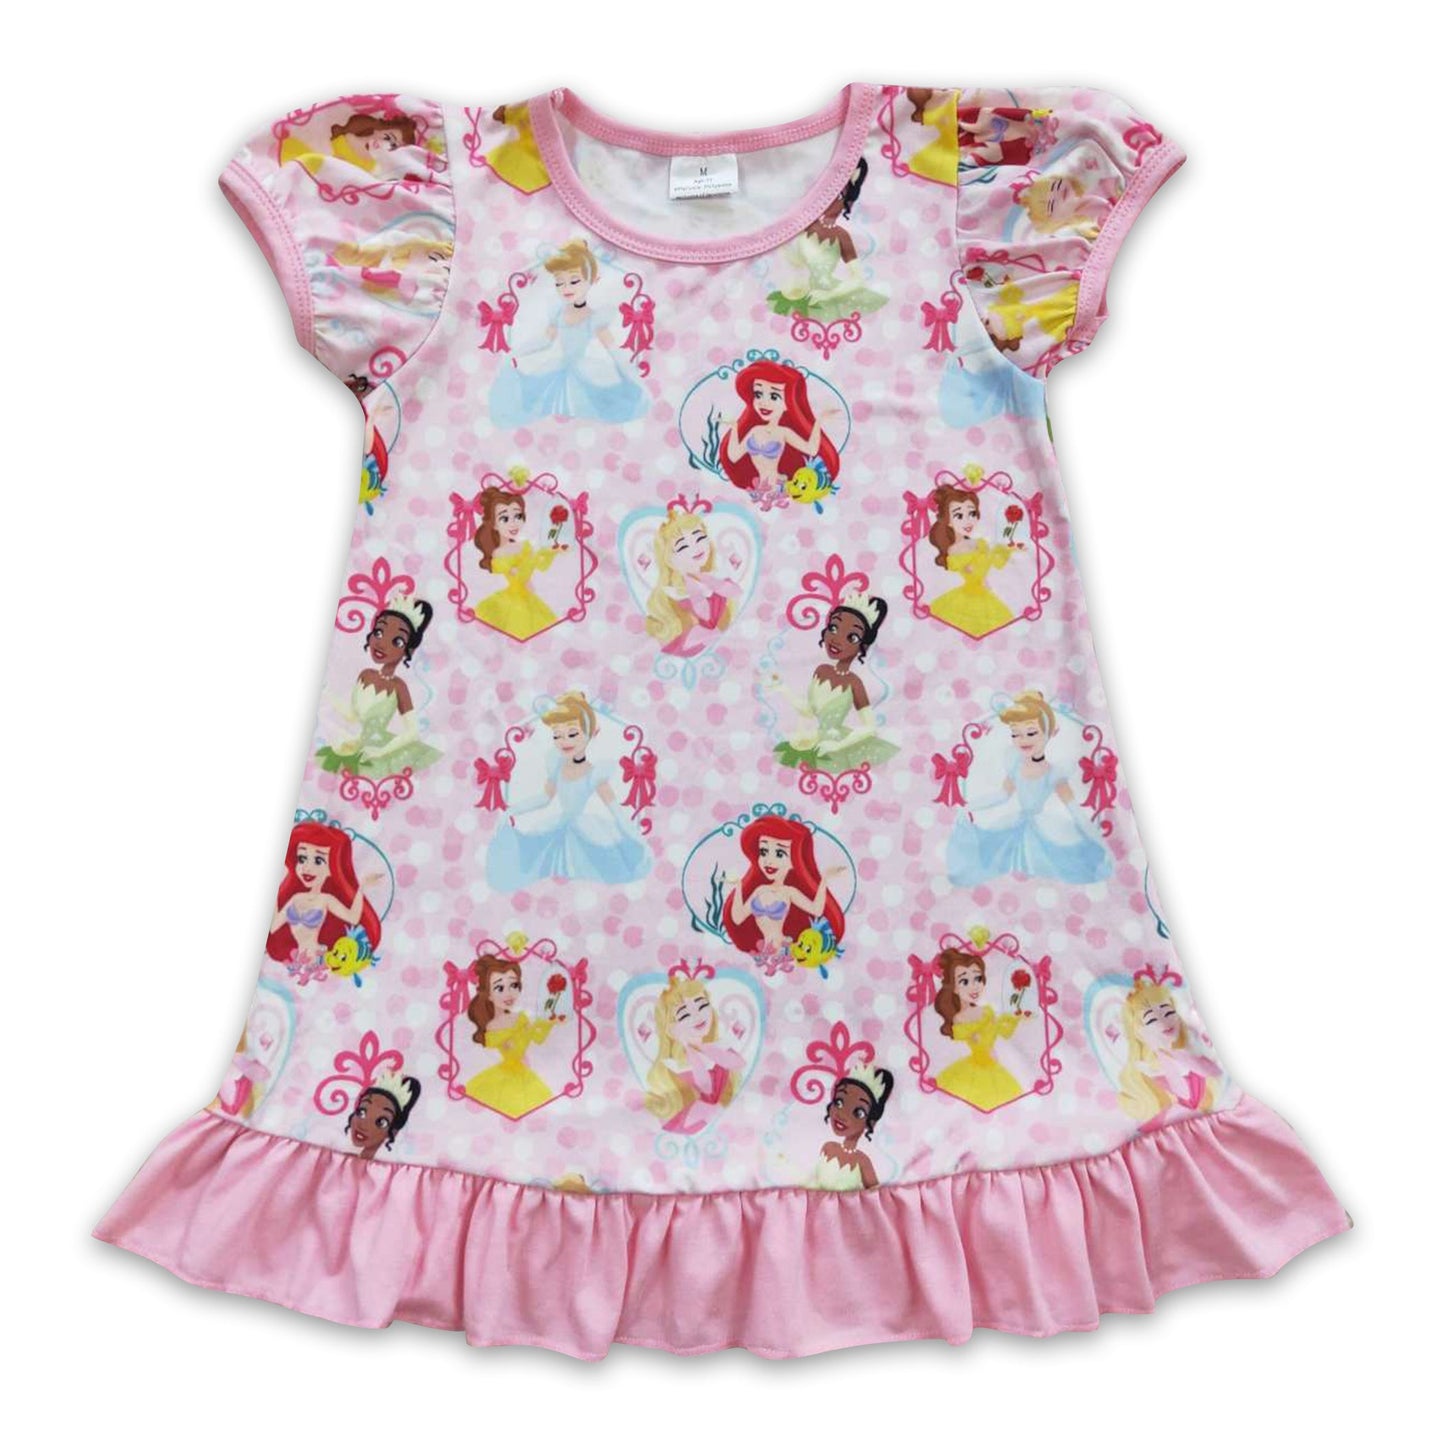 Polka dots short sleeves princess baby girls dress